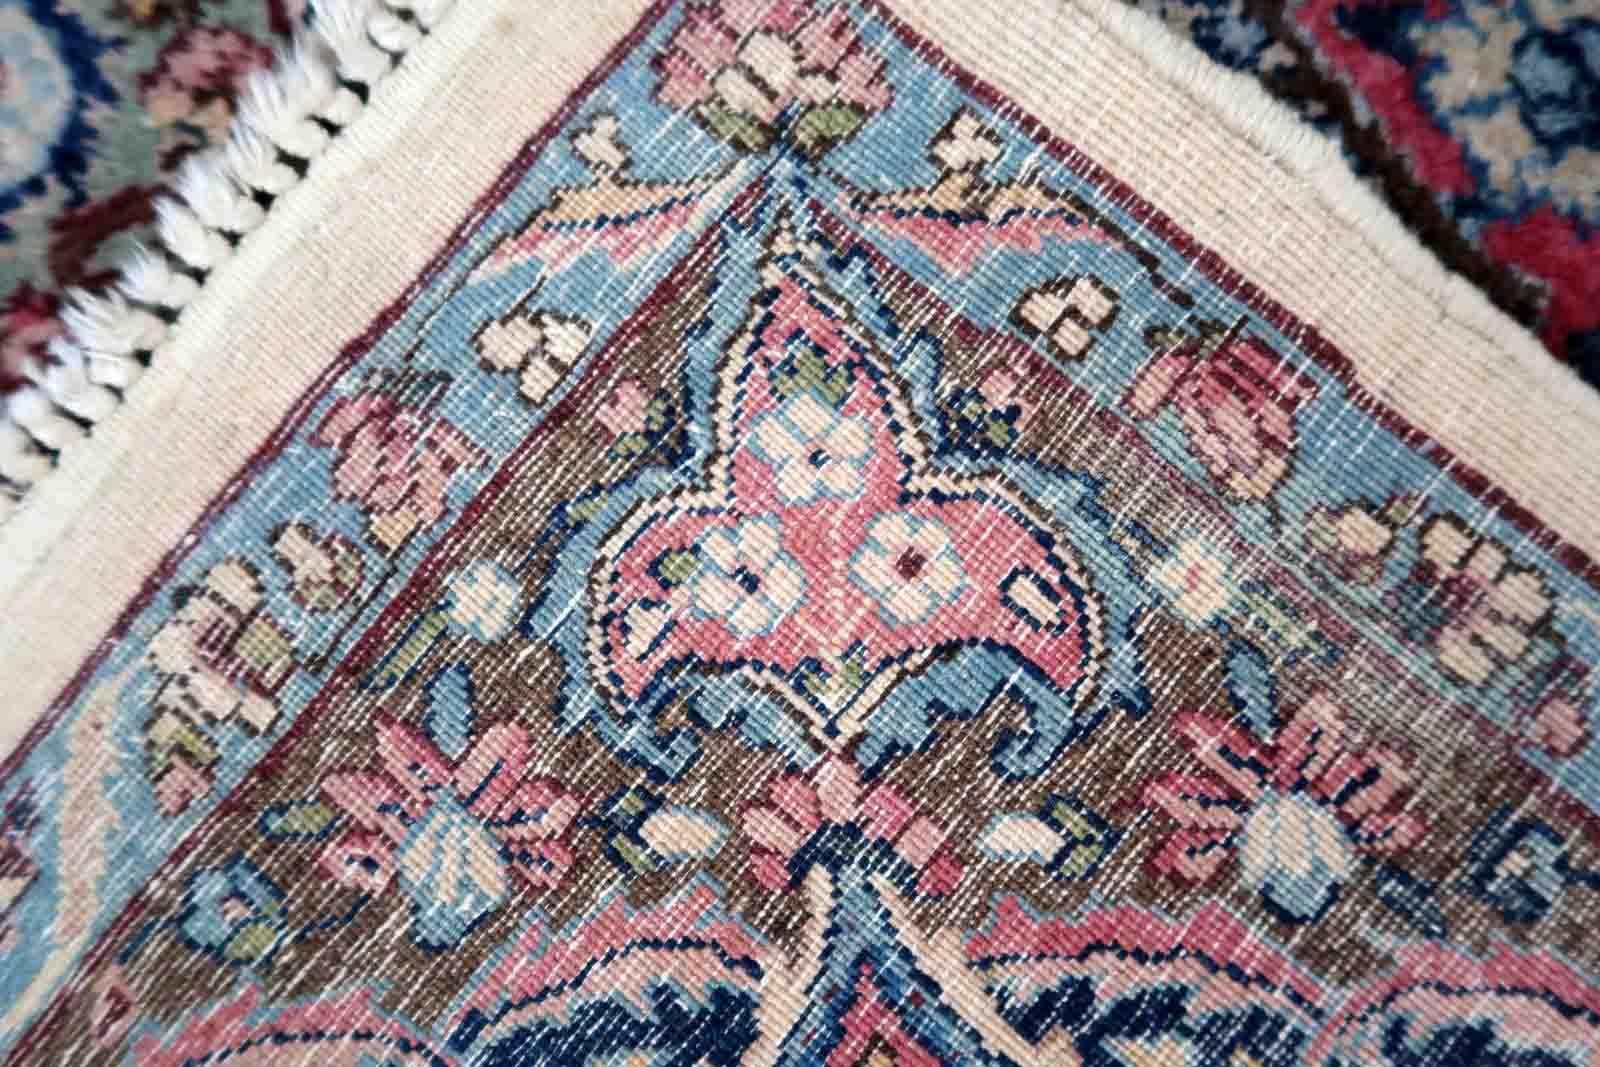 Handgefertigter antiker persischer Kerman-Teppich in bunten Farbtönen. Der Teppich ist mit einem lebhaften Blumenmuster versehen. Sie stammt vom Anfang des 20. Jahrhunderts und ist in gutem Originalzustand.

-zustand: original gut,

-etwa: